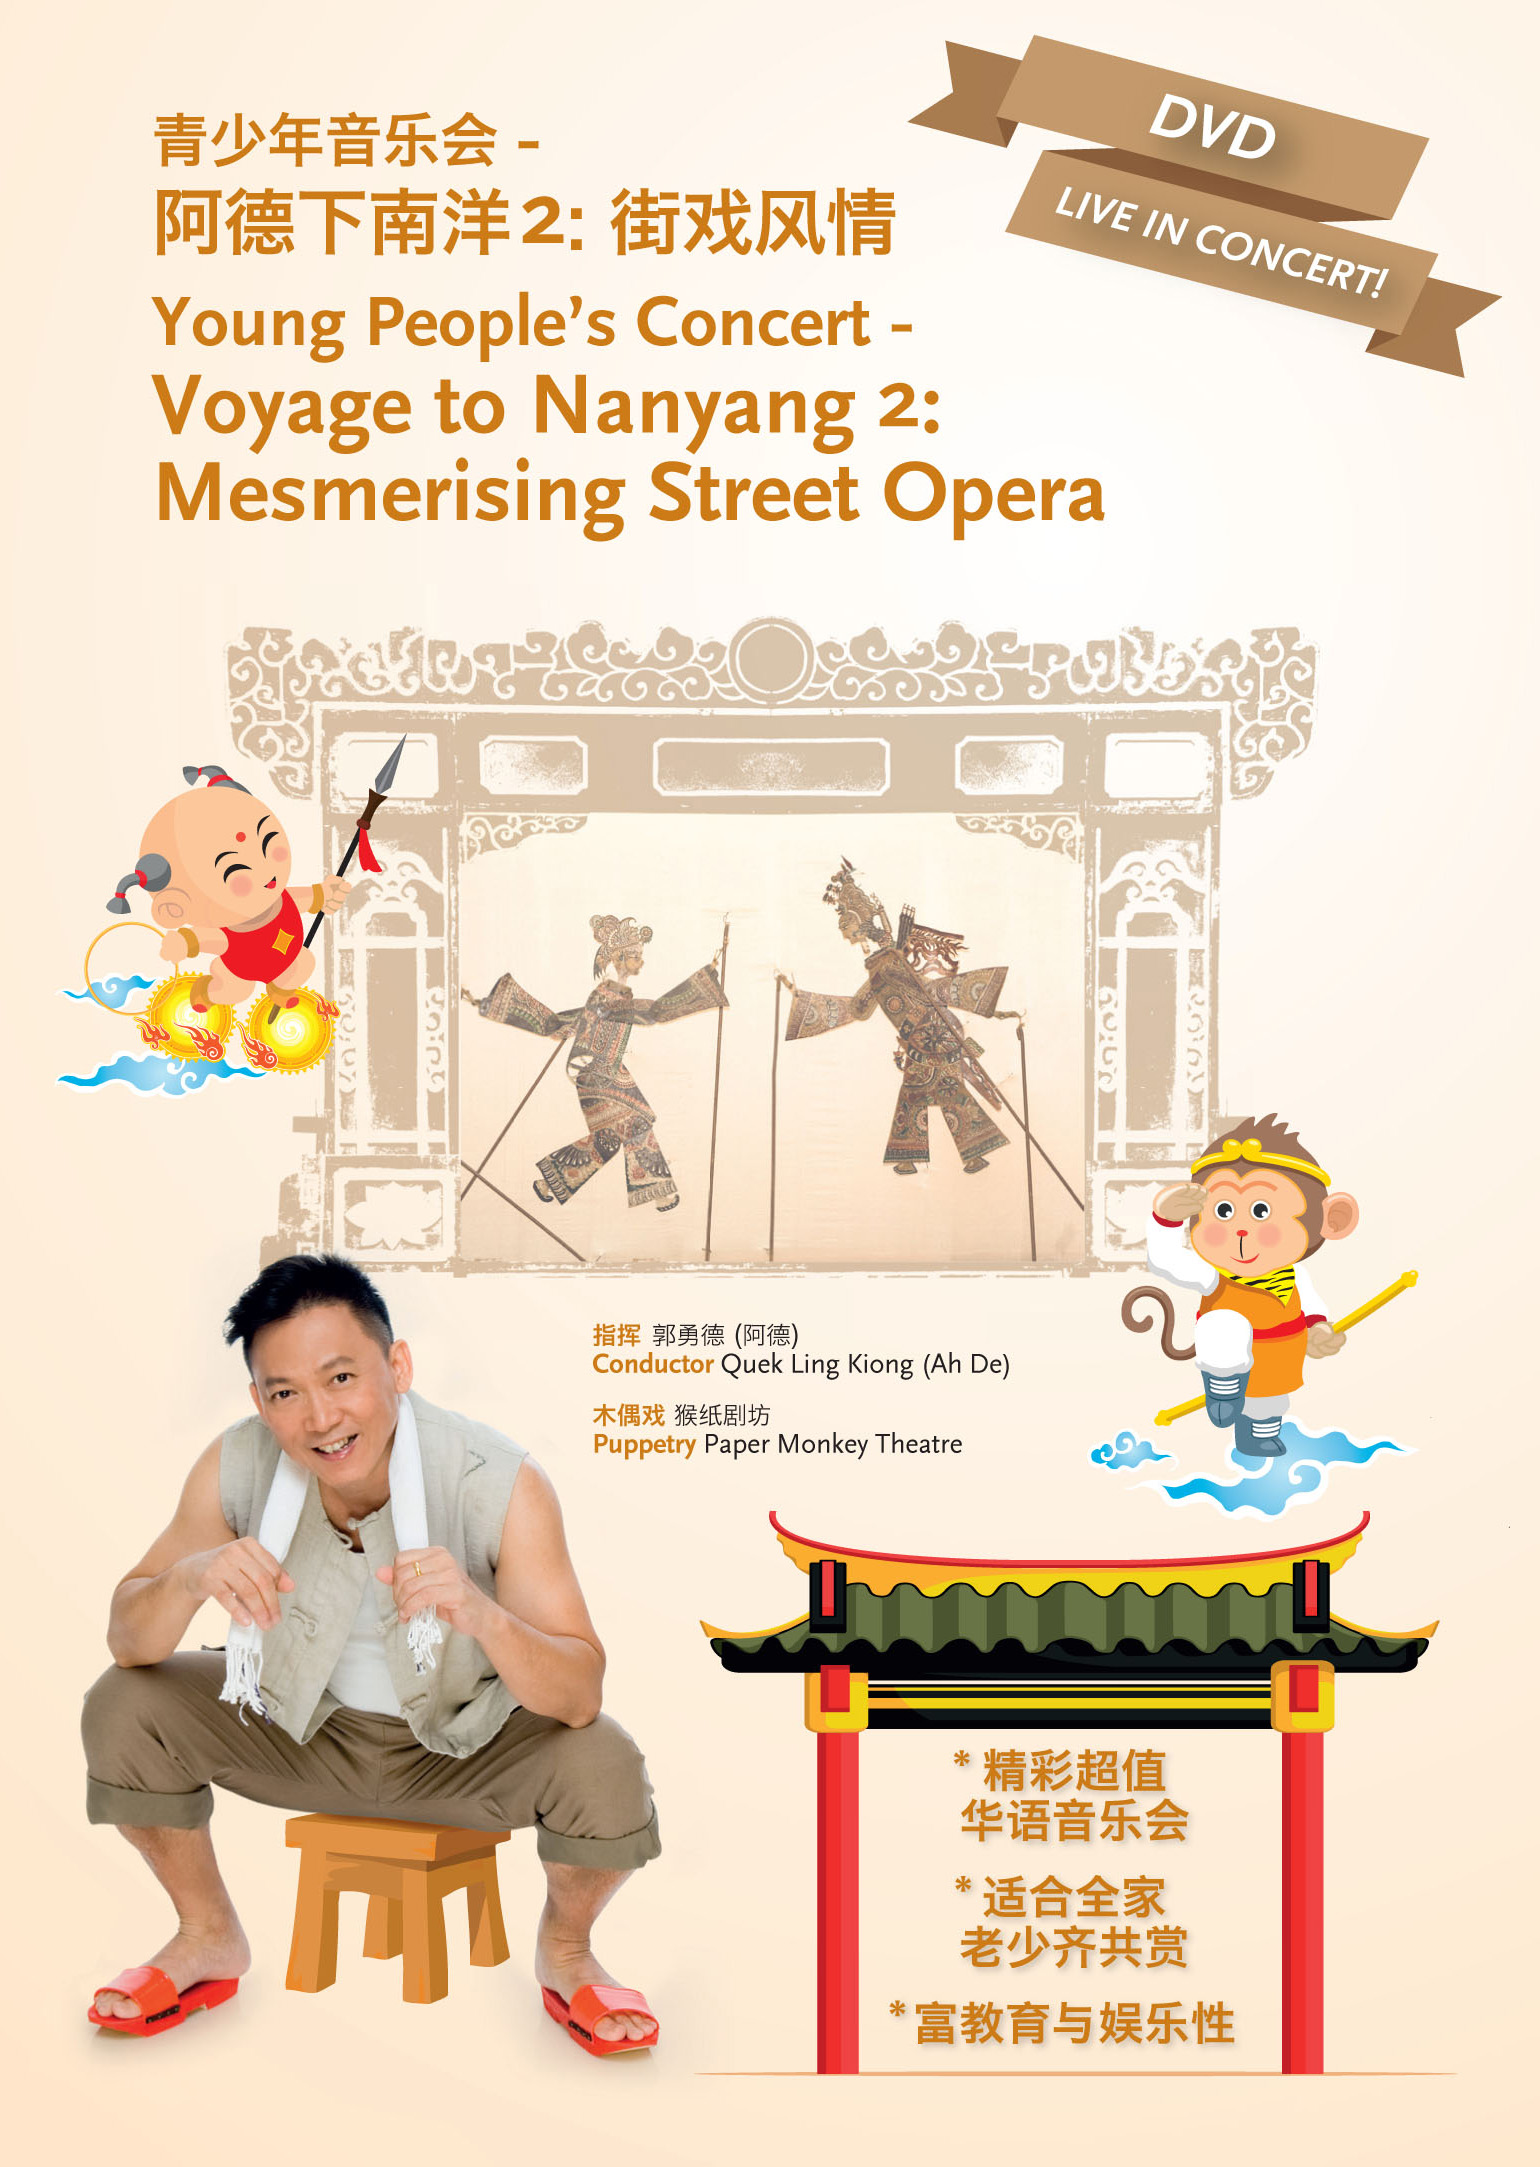 Voyage-to-Nanyang-2-DVD Voyage to Nanyang II：Mesmerising Street Opera